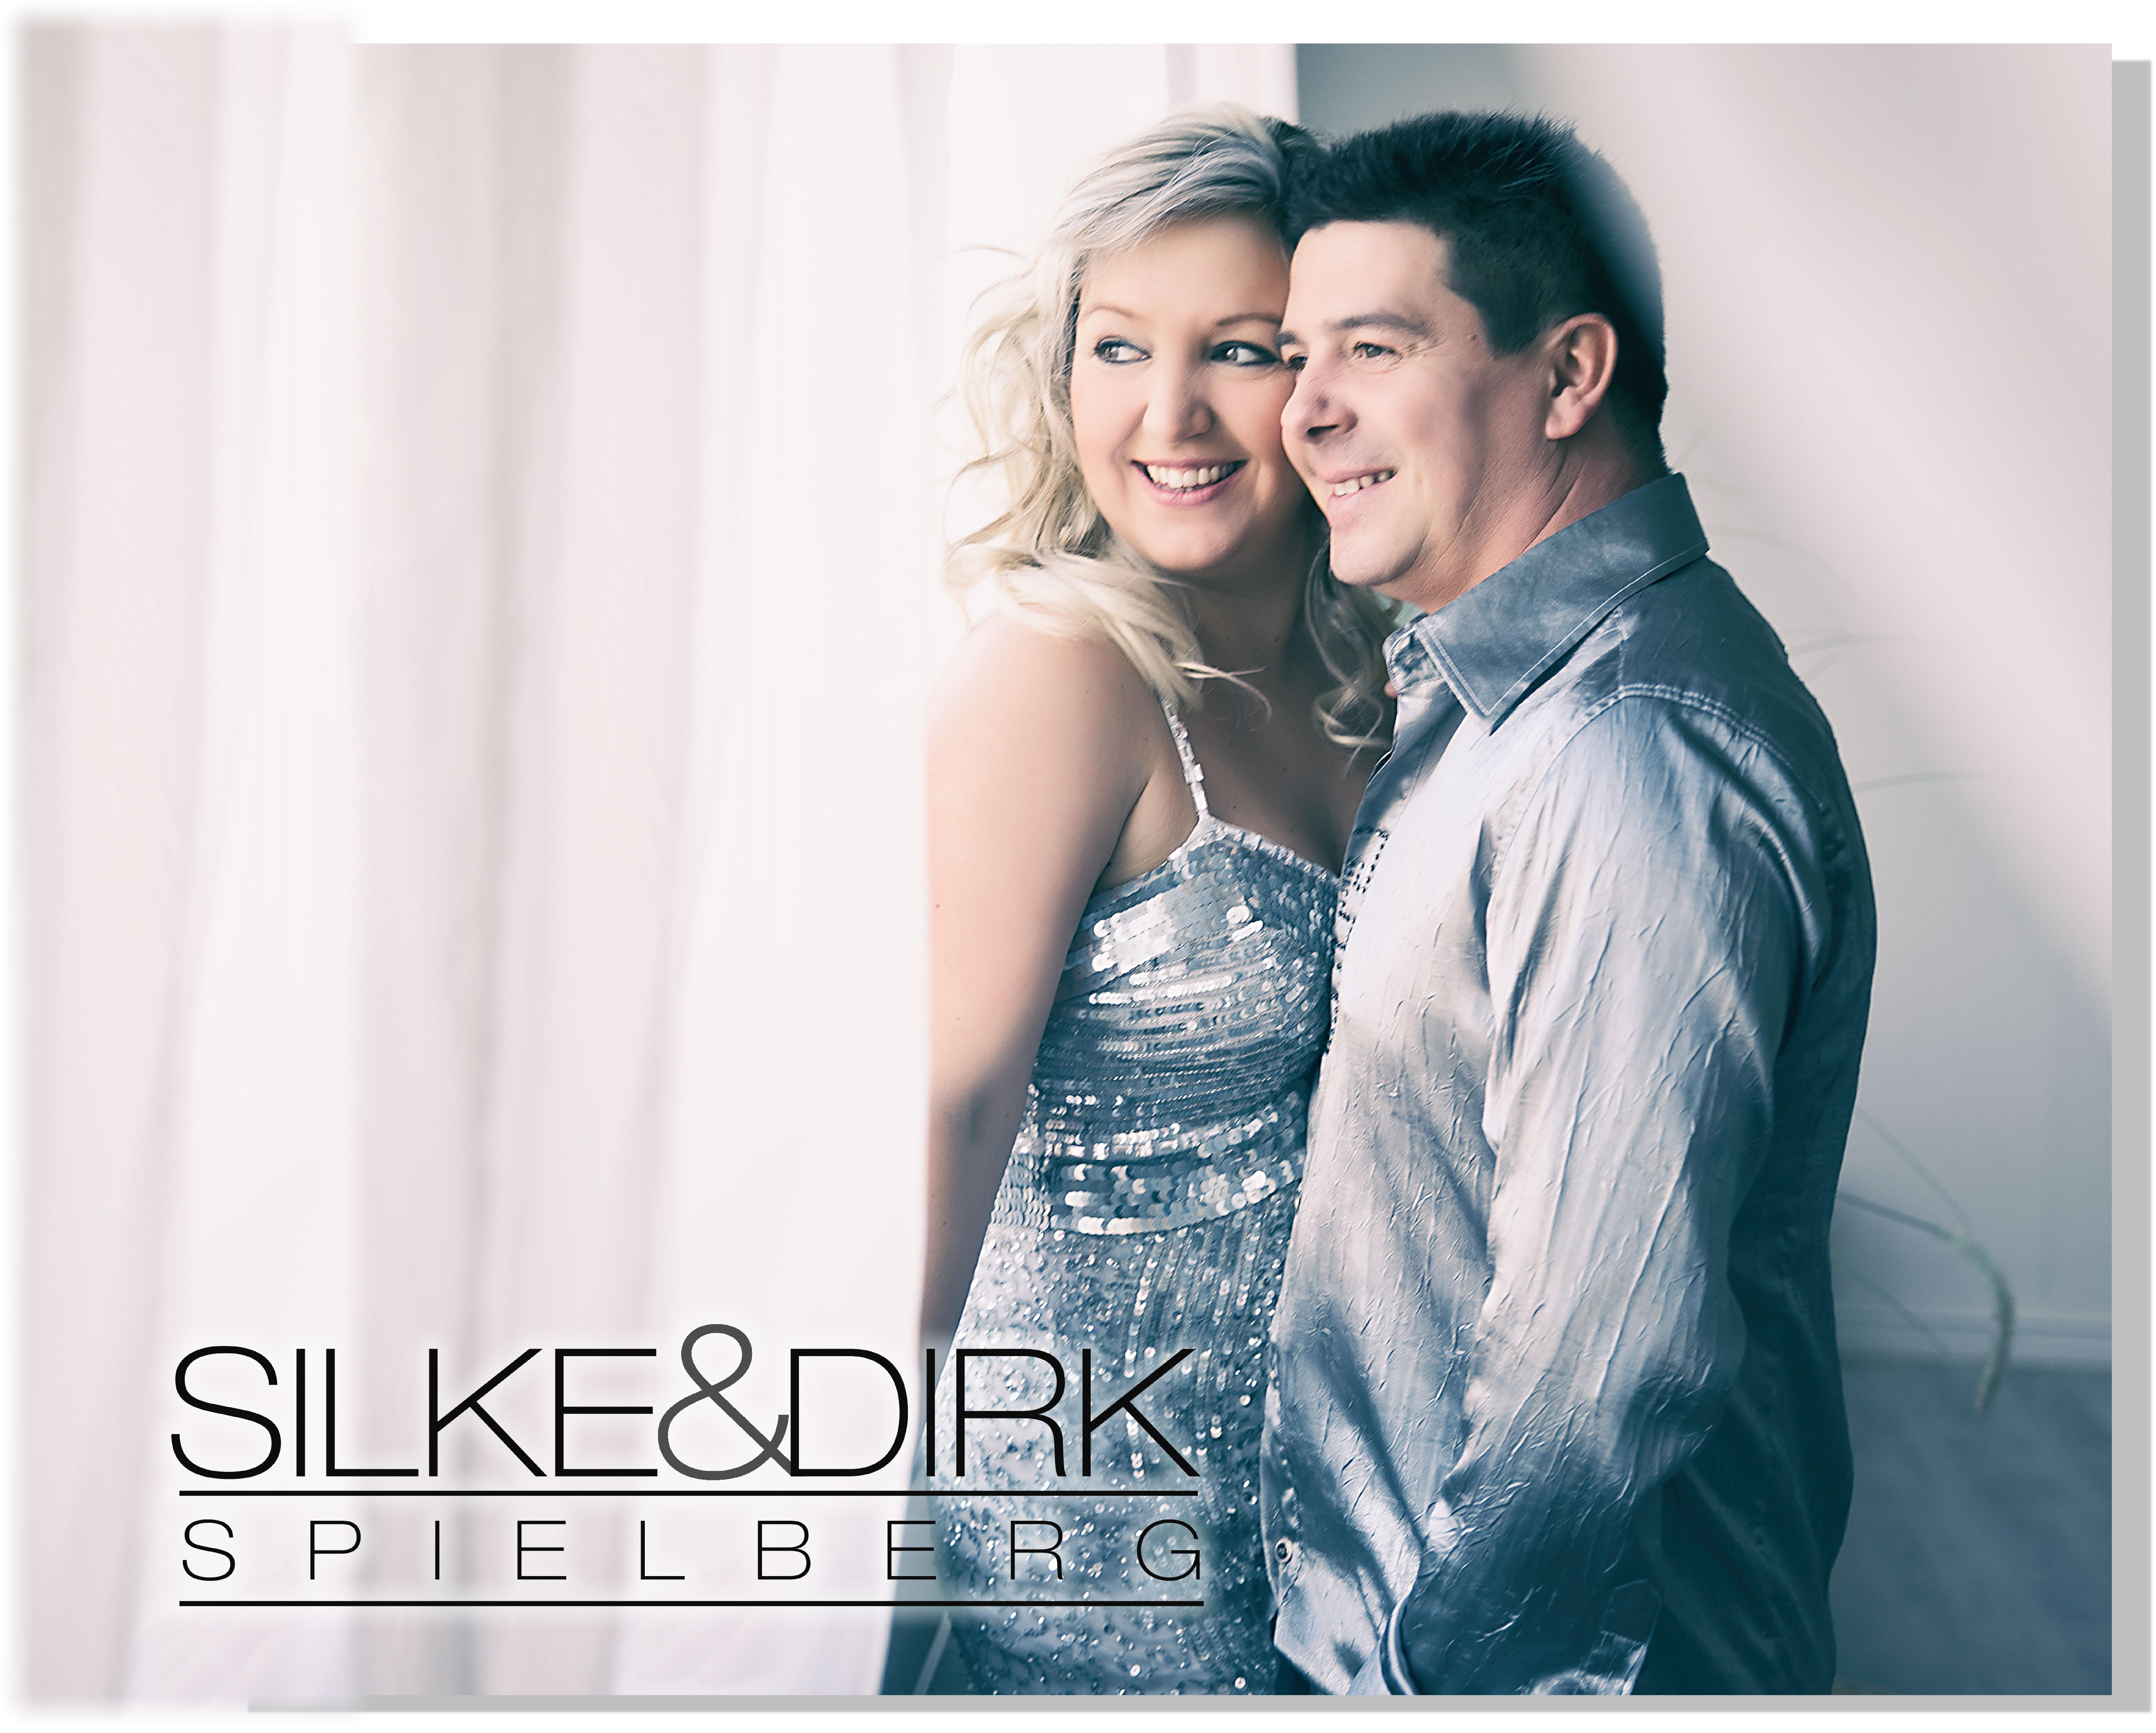 Silke & Dirk Spielberg präsentieren ihr 5. Album